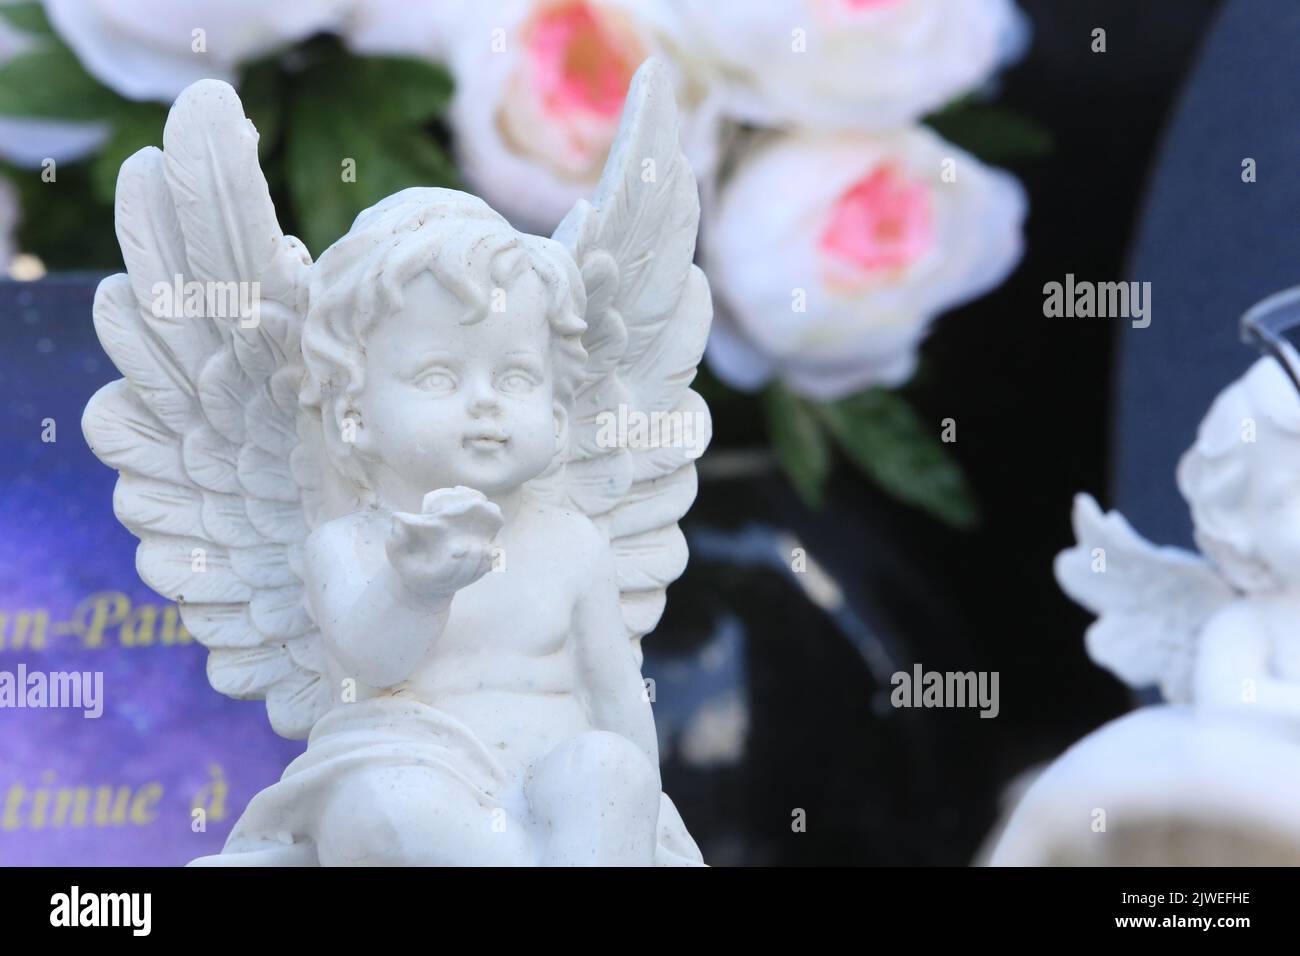 Statuette d'un ange sur une pierre tombale offrant une Rose. Saint-Gervais-les-Bains. Haute-Savoie. Auvergne-Rhône-Alpes. Frankreich. Europa. Stockfoto